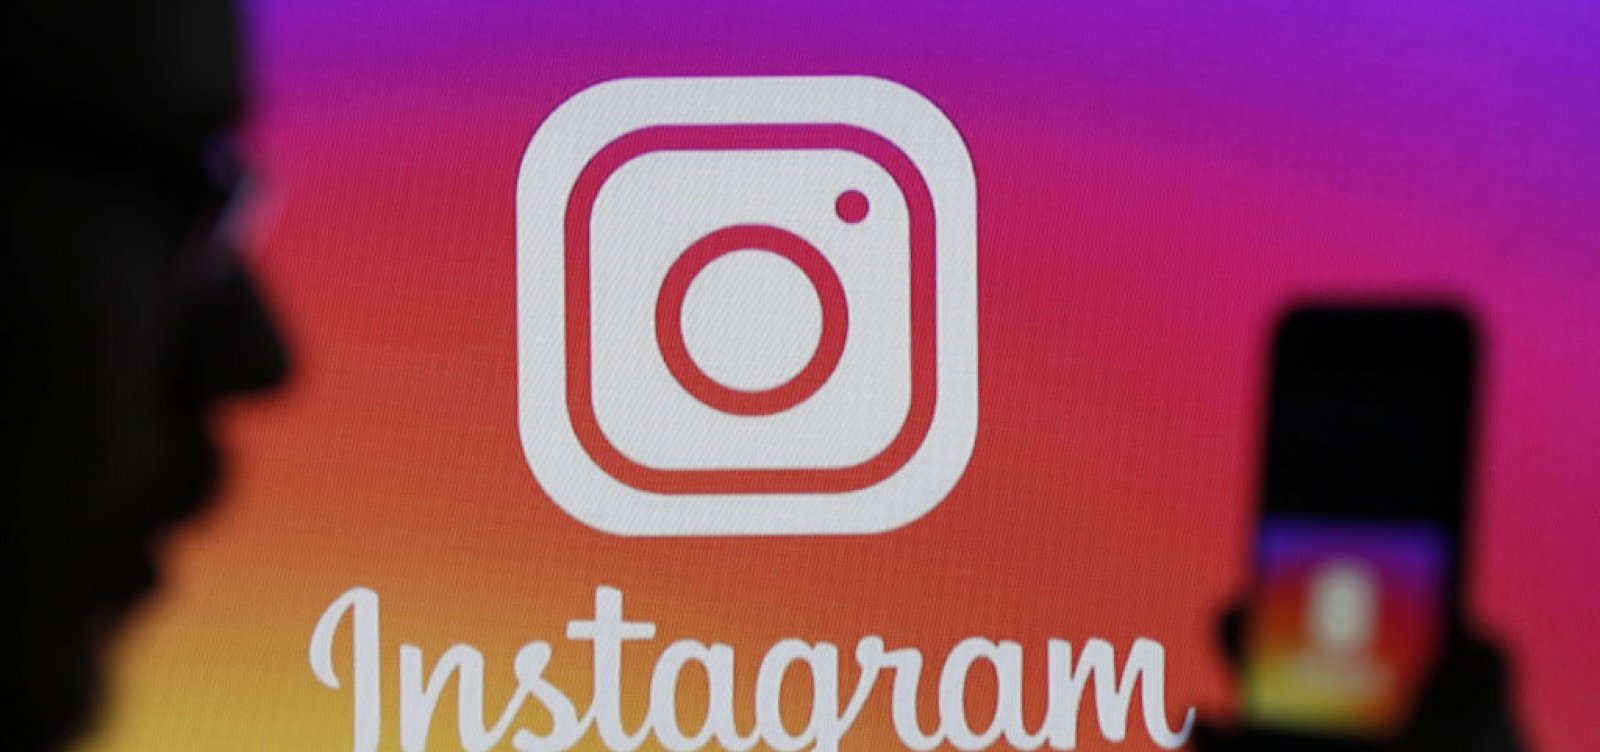 Usuários têm problemas em postar no Instagram; rede social apresenta instabilidade